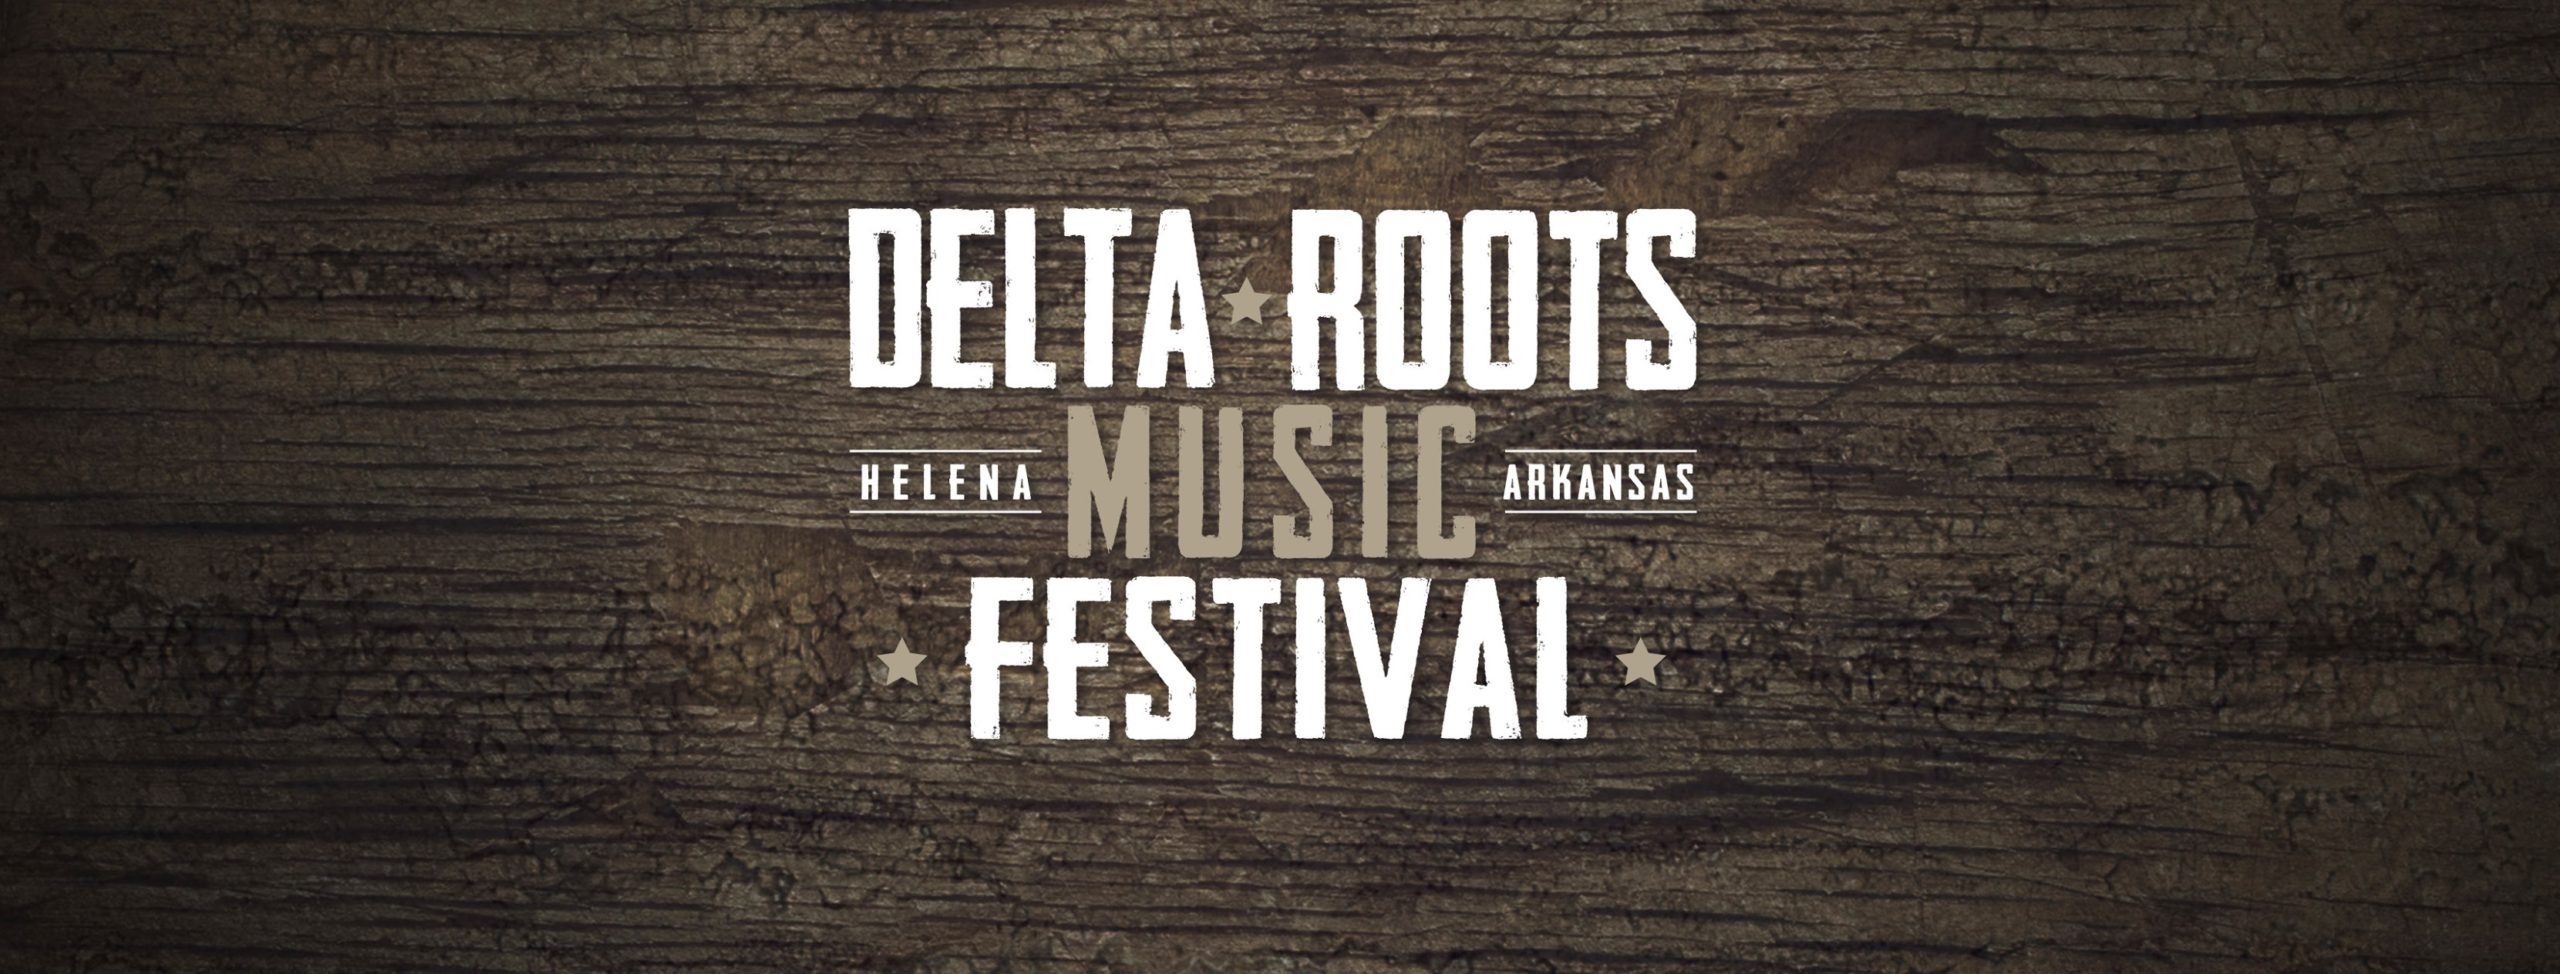 Delta Roots Music Festival Helena, Arkansas